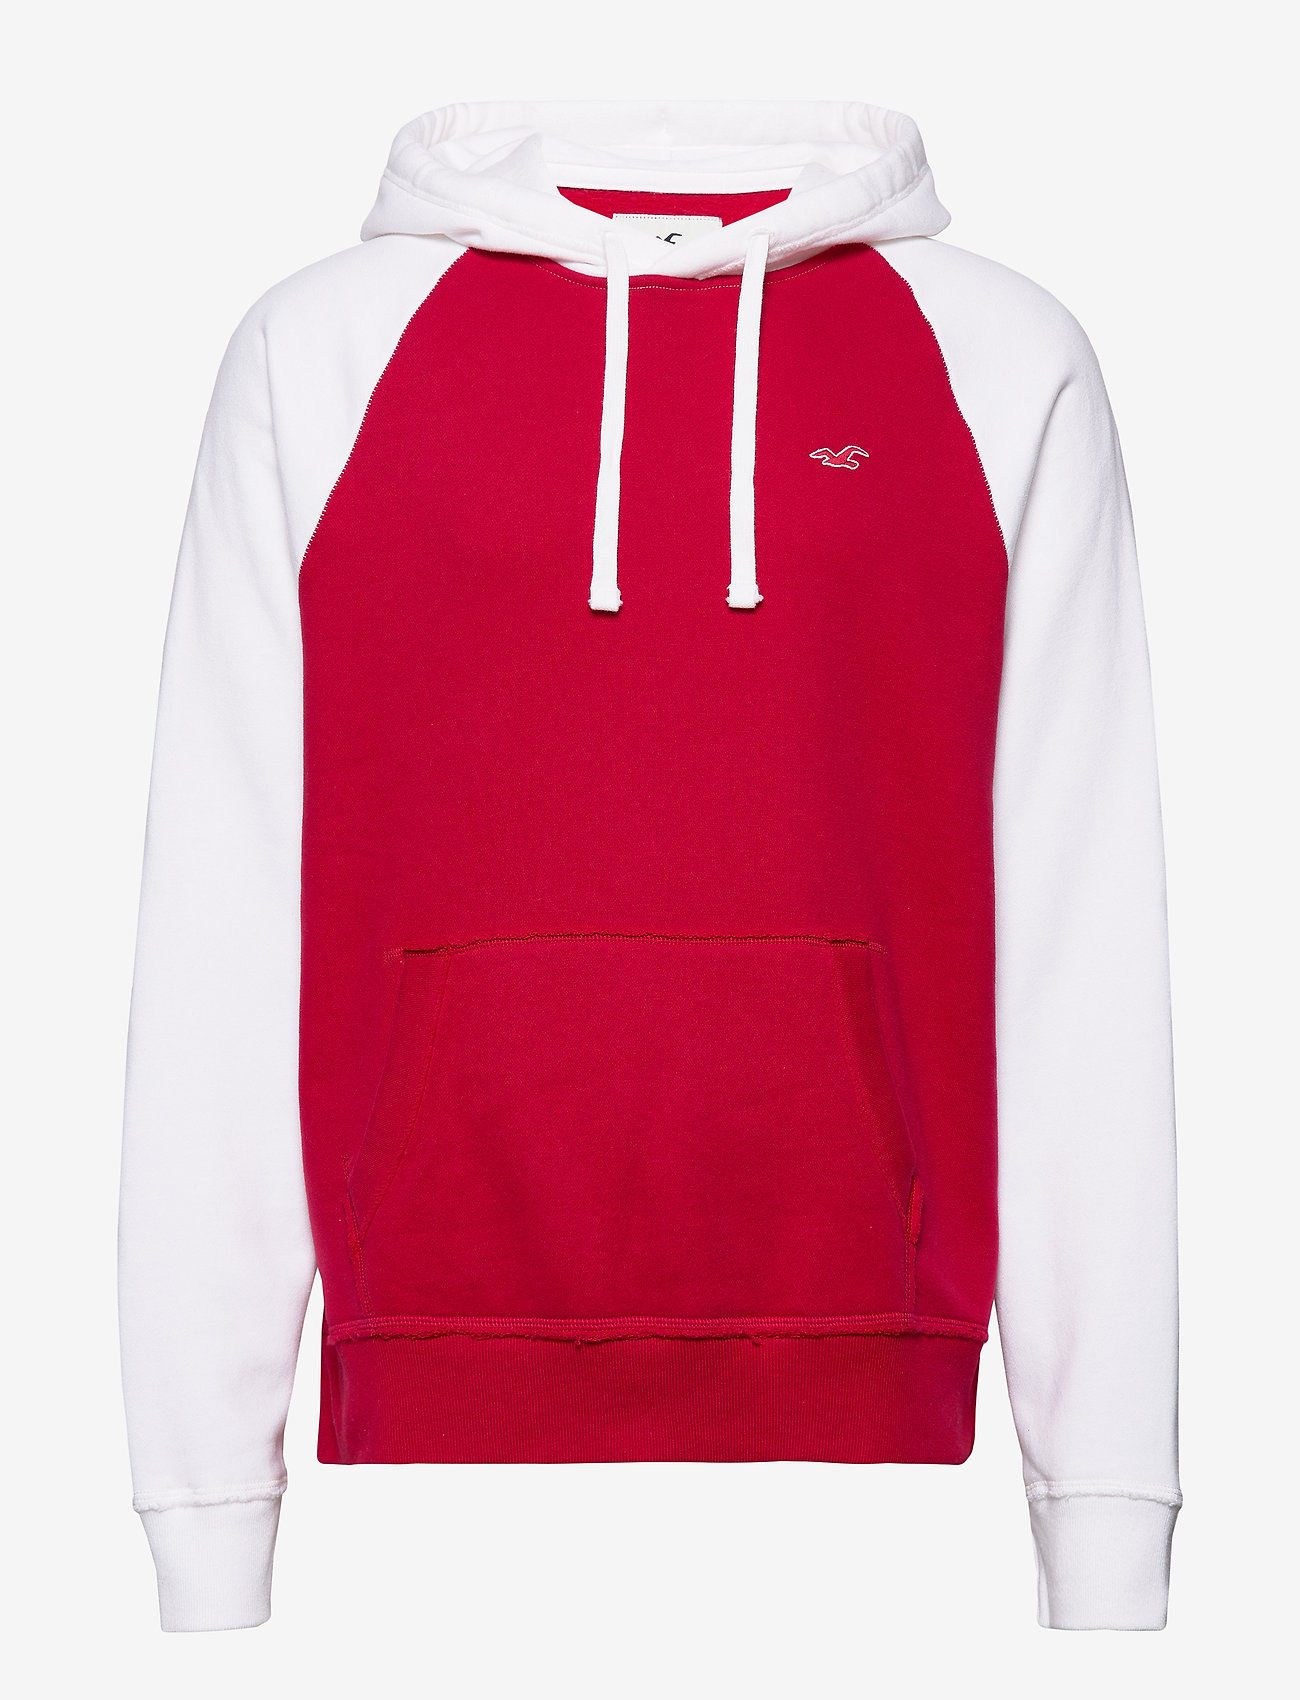 hollister red hoodie